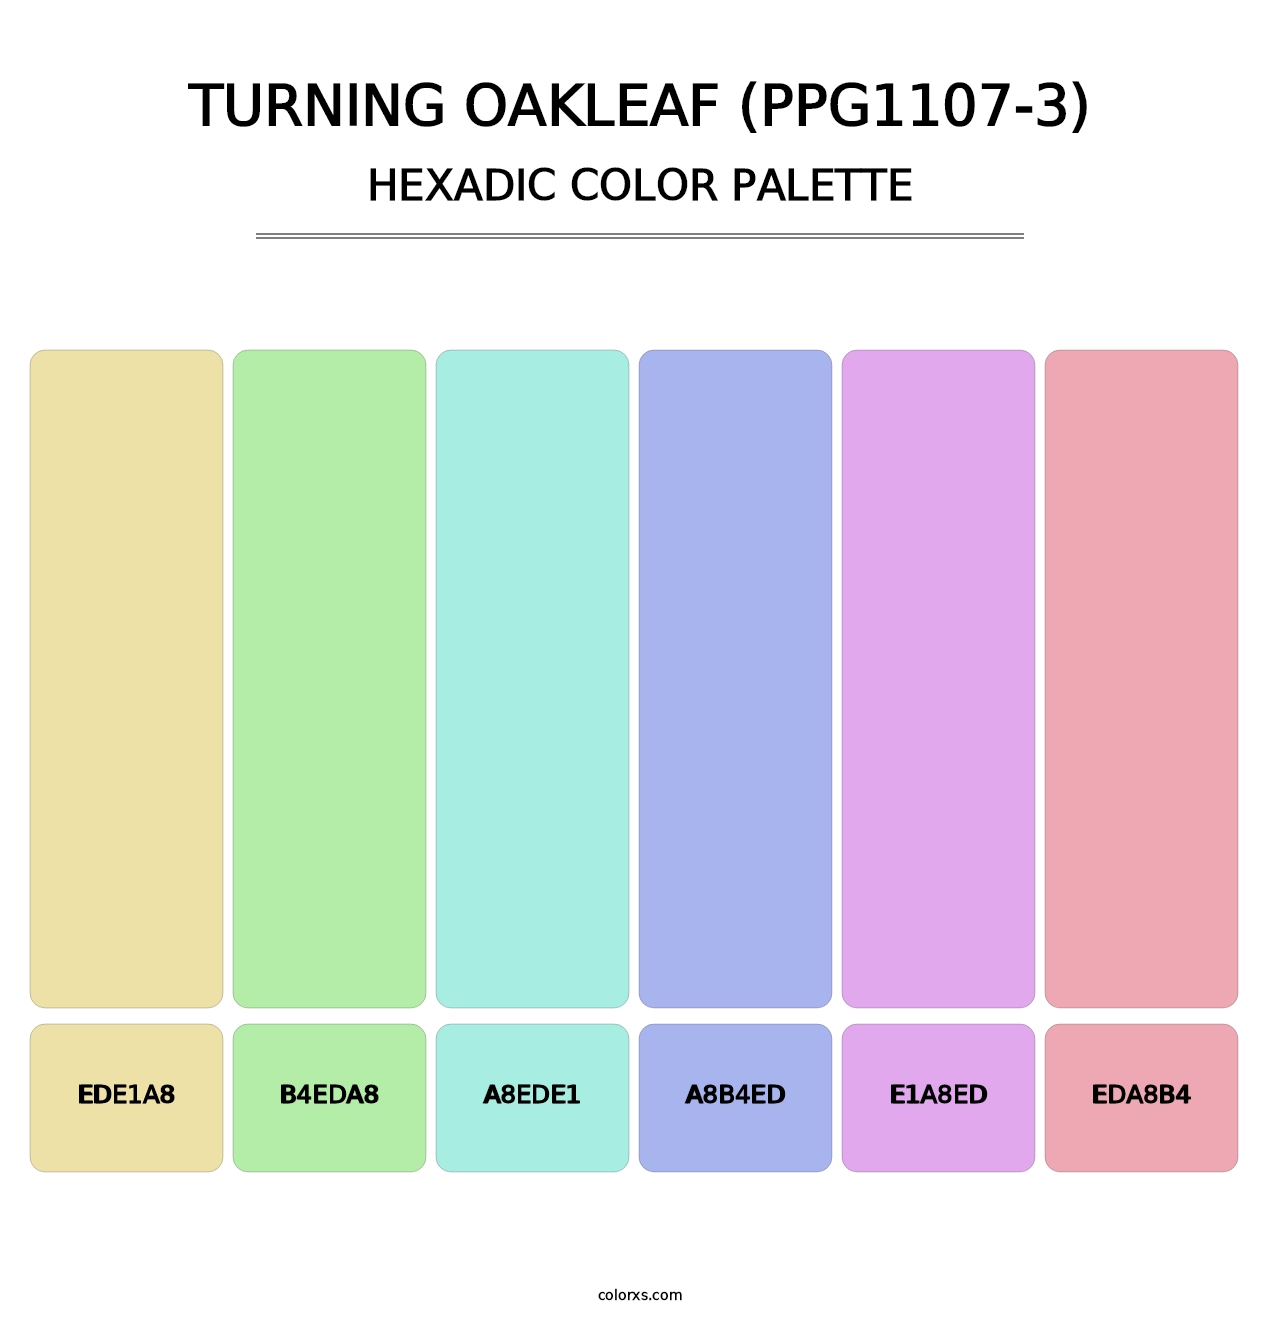 Turning Oakleaf (PPG1107-3) - Hexadic Color Palette